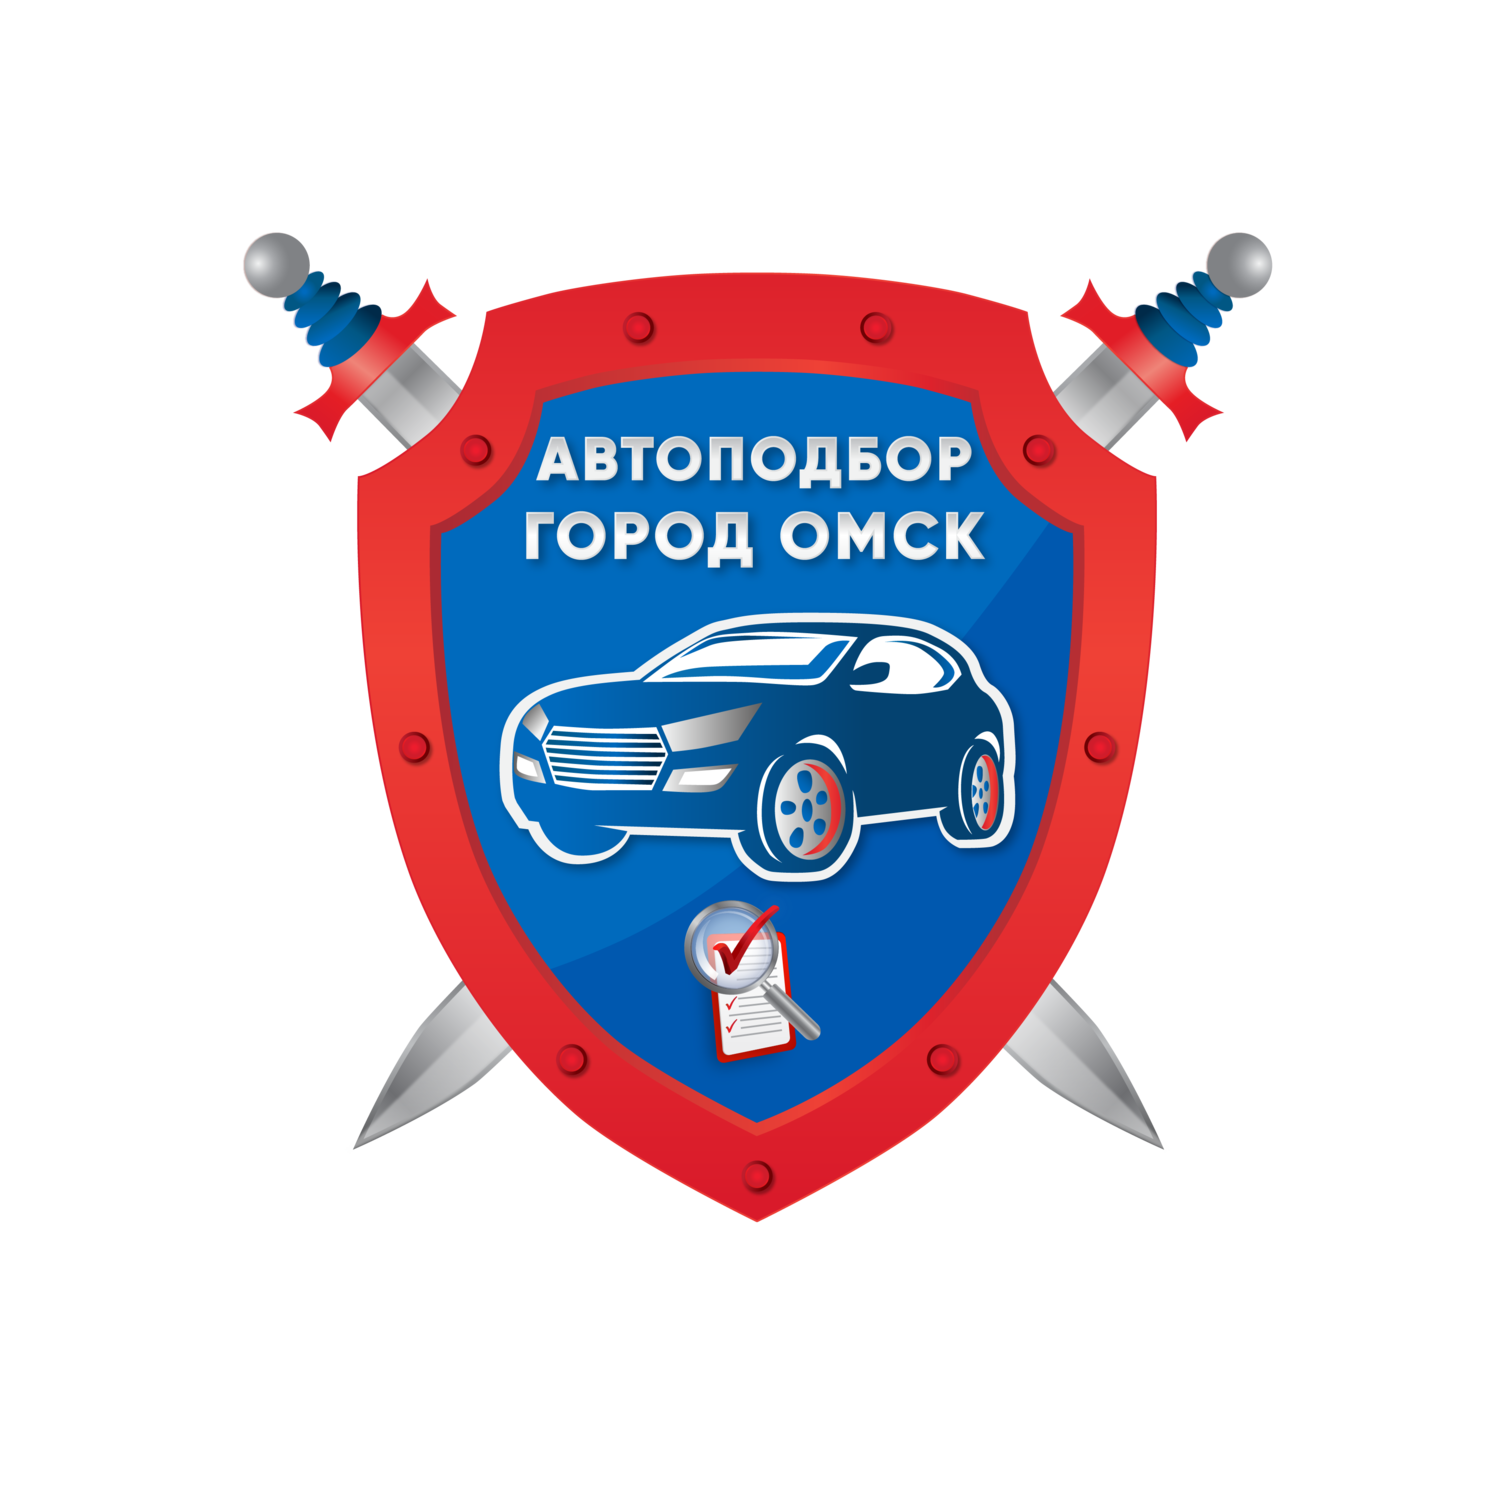 Автоподбор в Омске, проверка автомобилей в Омске, Автоподбор Омск